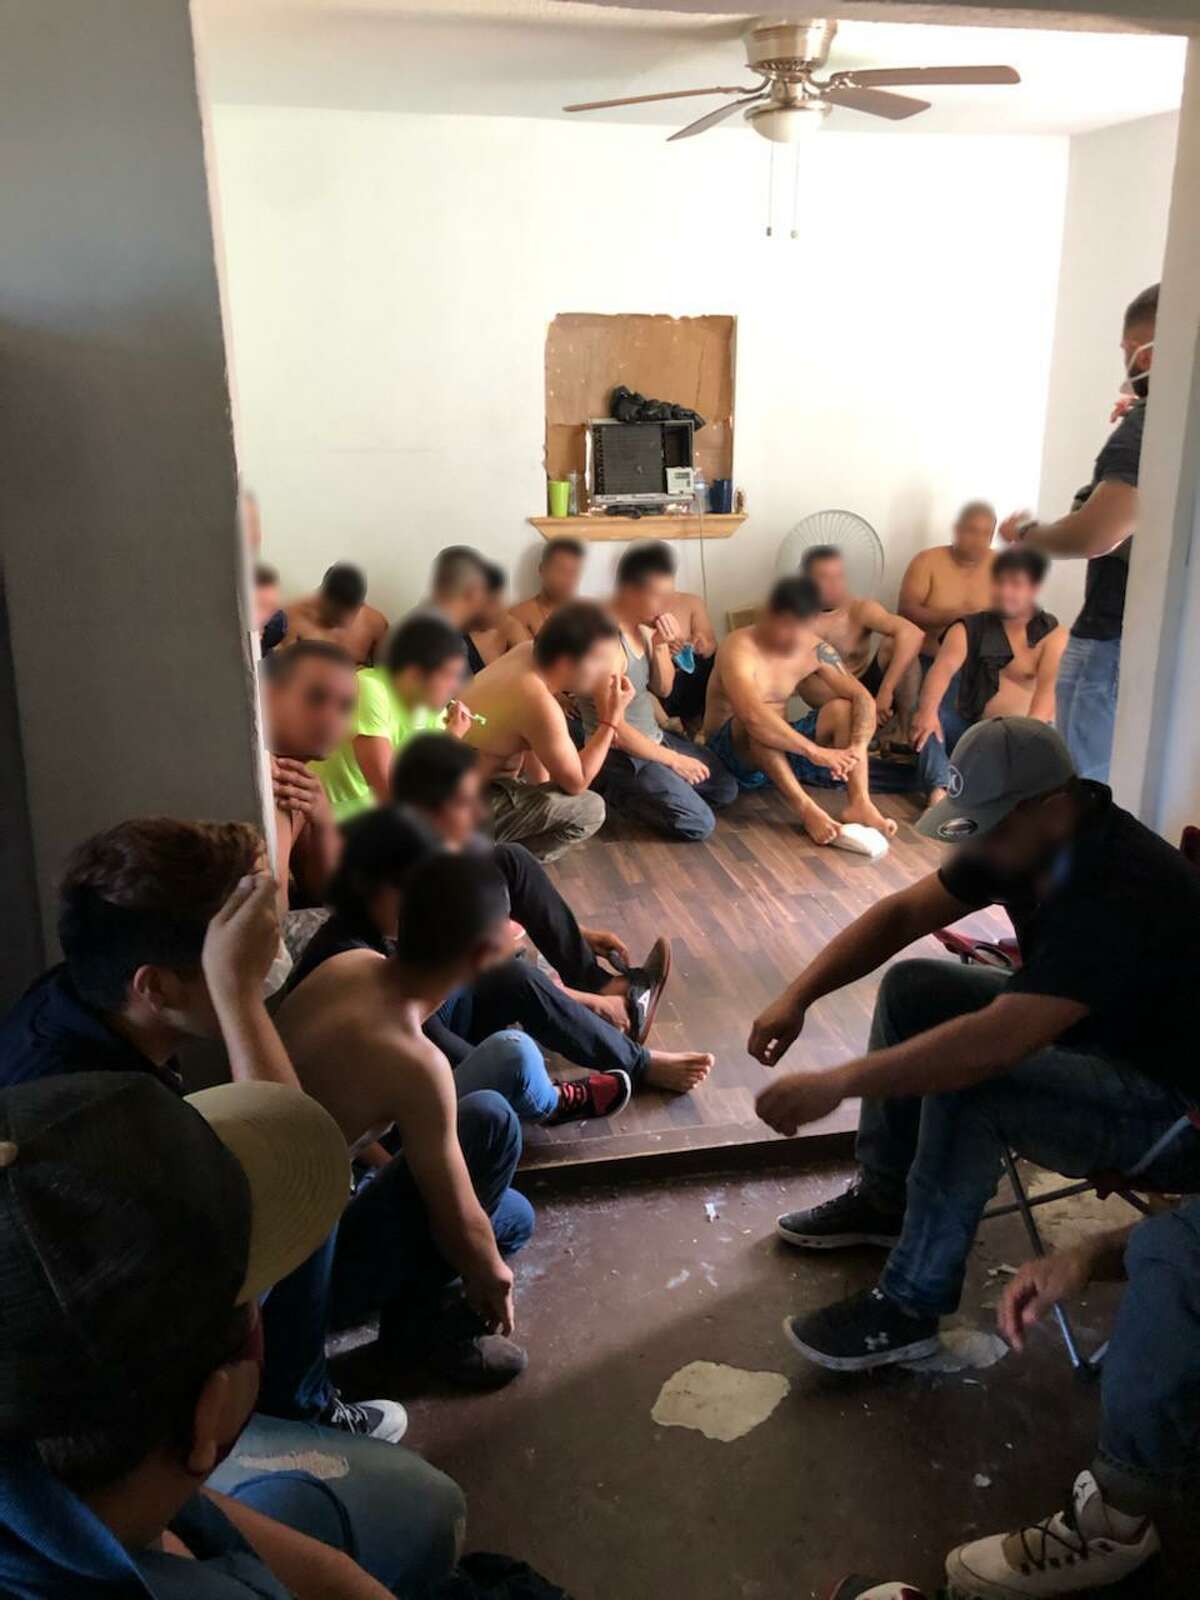 Un total de 25 inmigrantes fueron detenidos después de ser encontrados en el interior de una casa de seguridad.